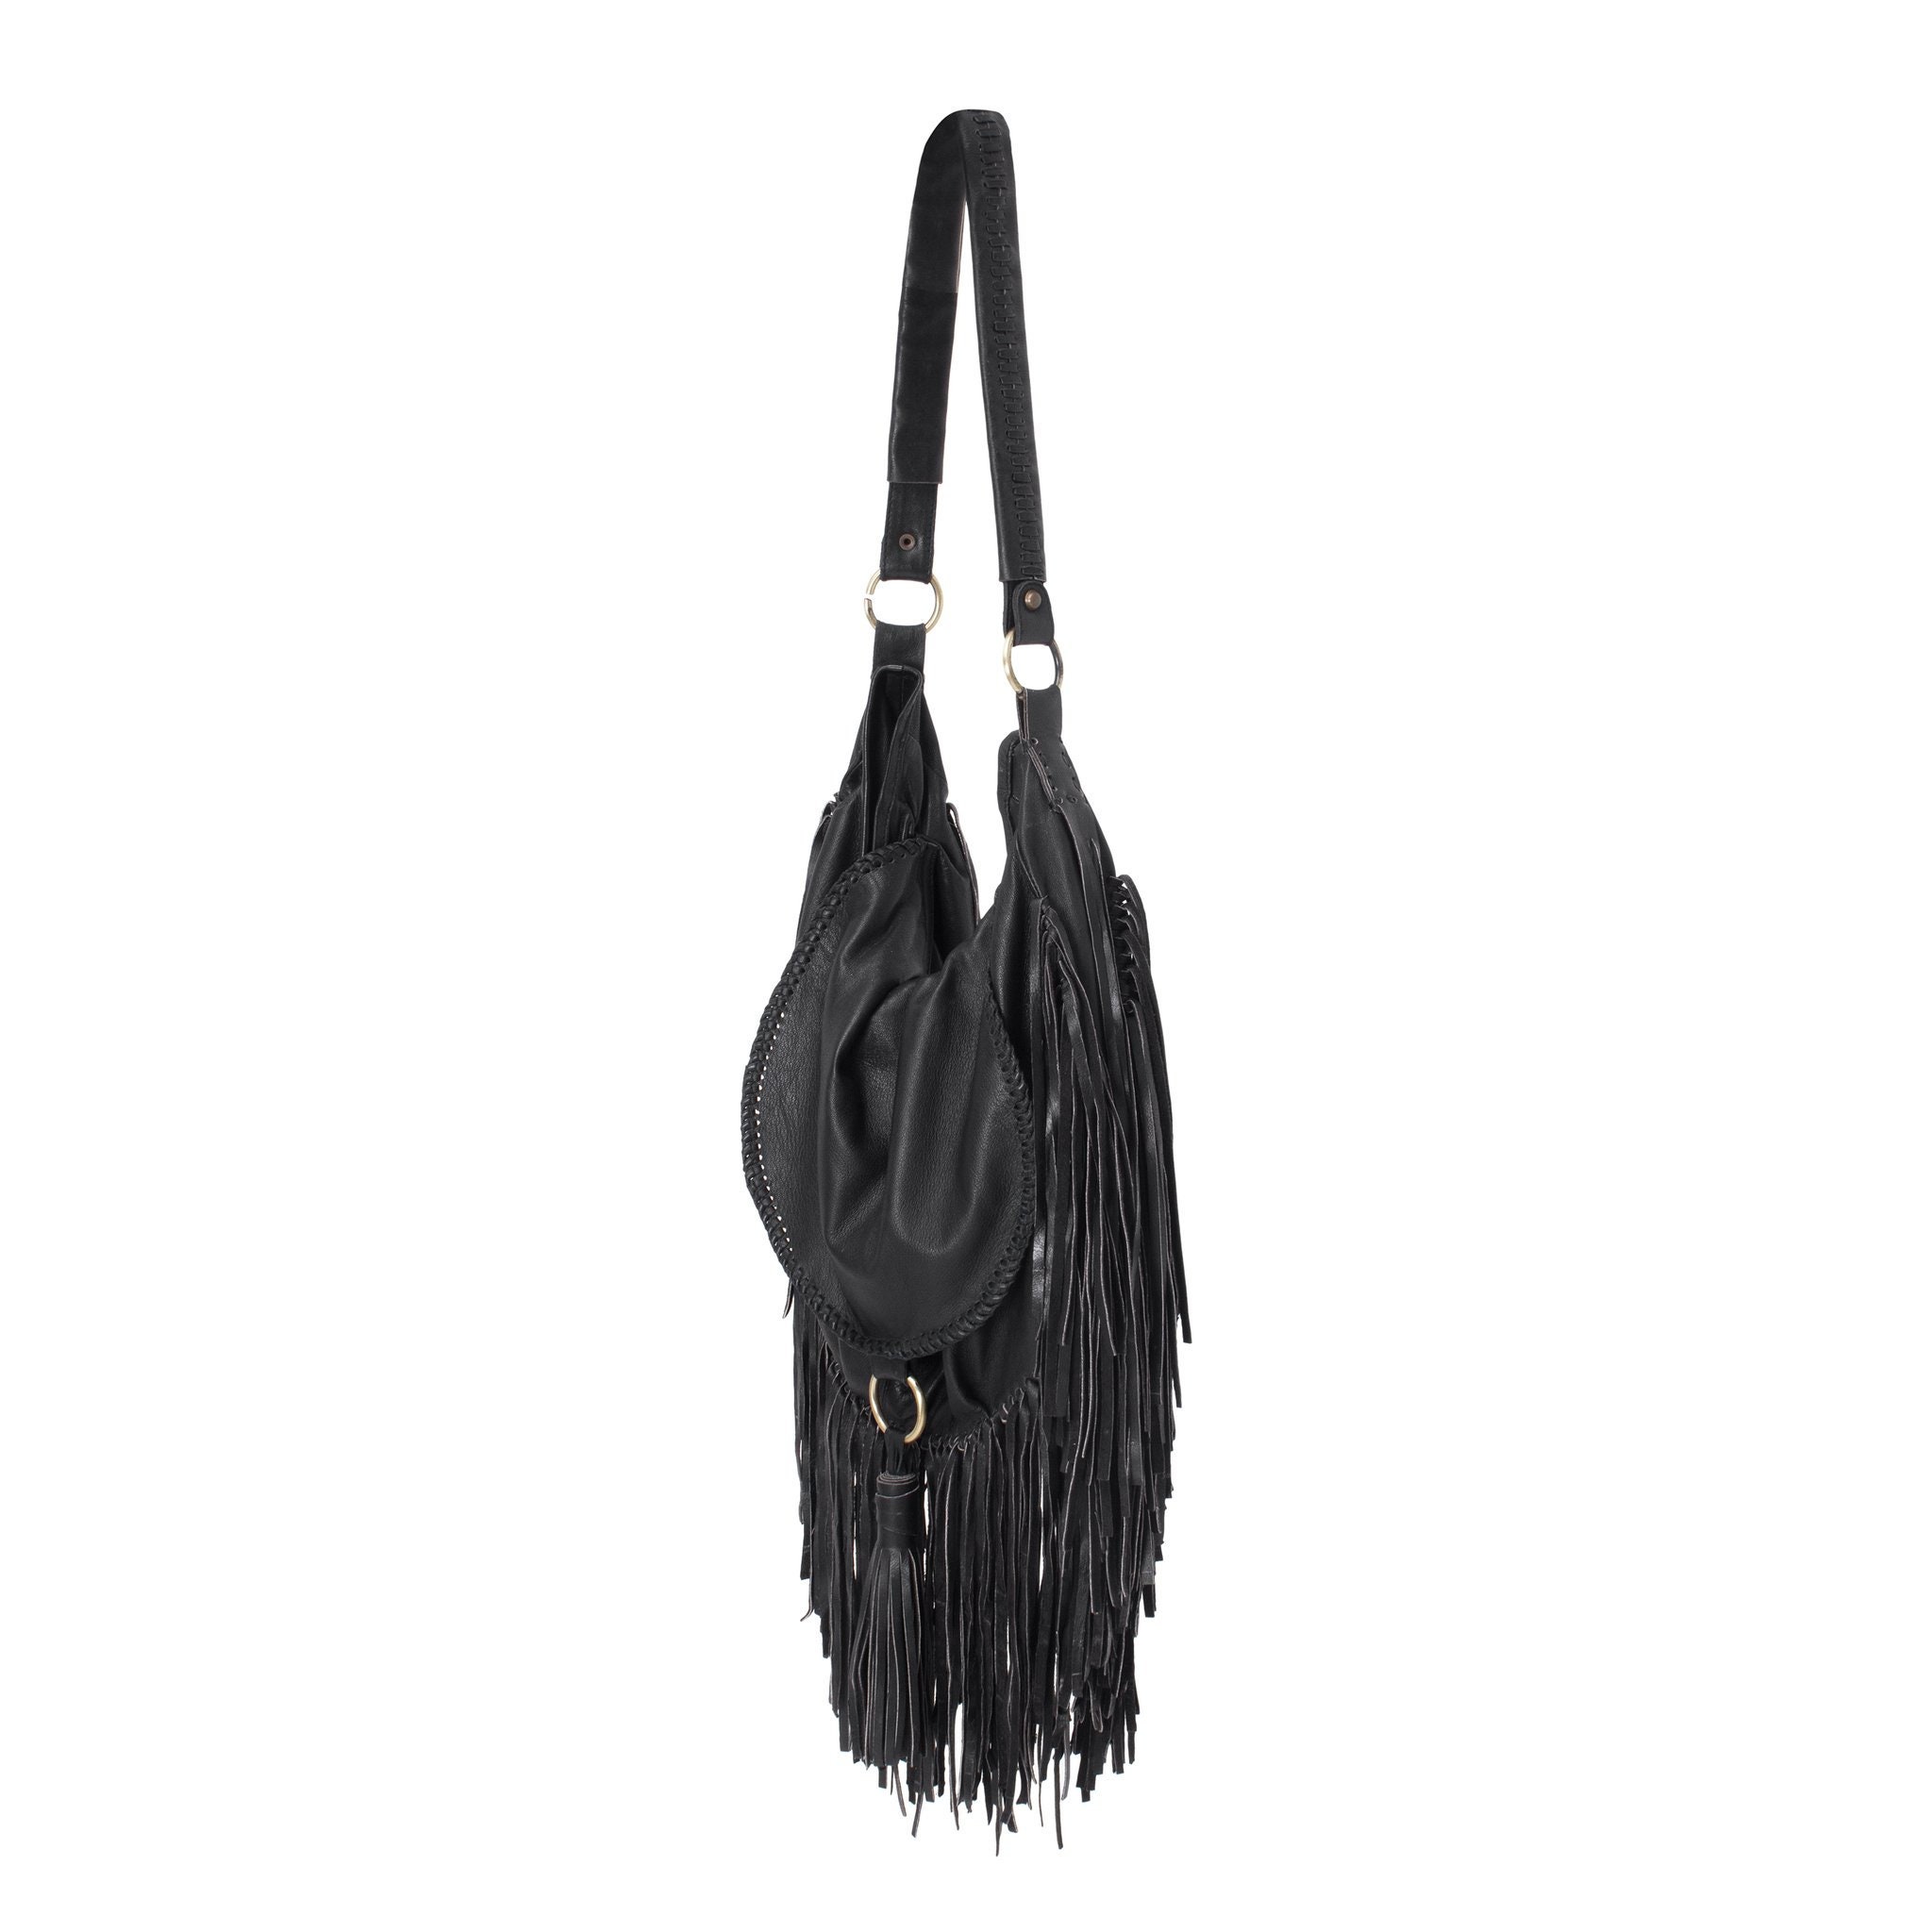 BOHEMIAN FRINGE BAG Black Leather Bag Side Tassle Silk Lining Travel ...